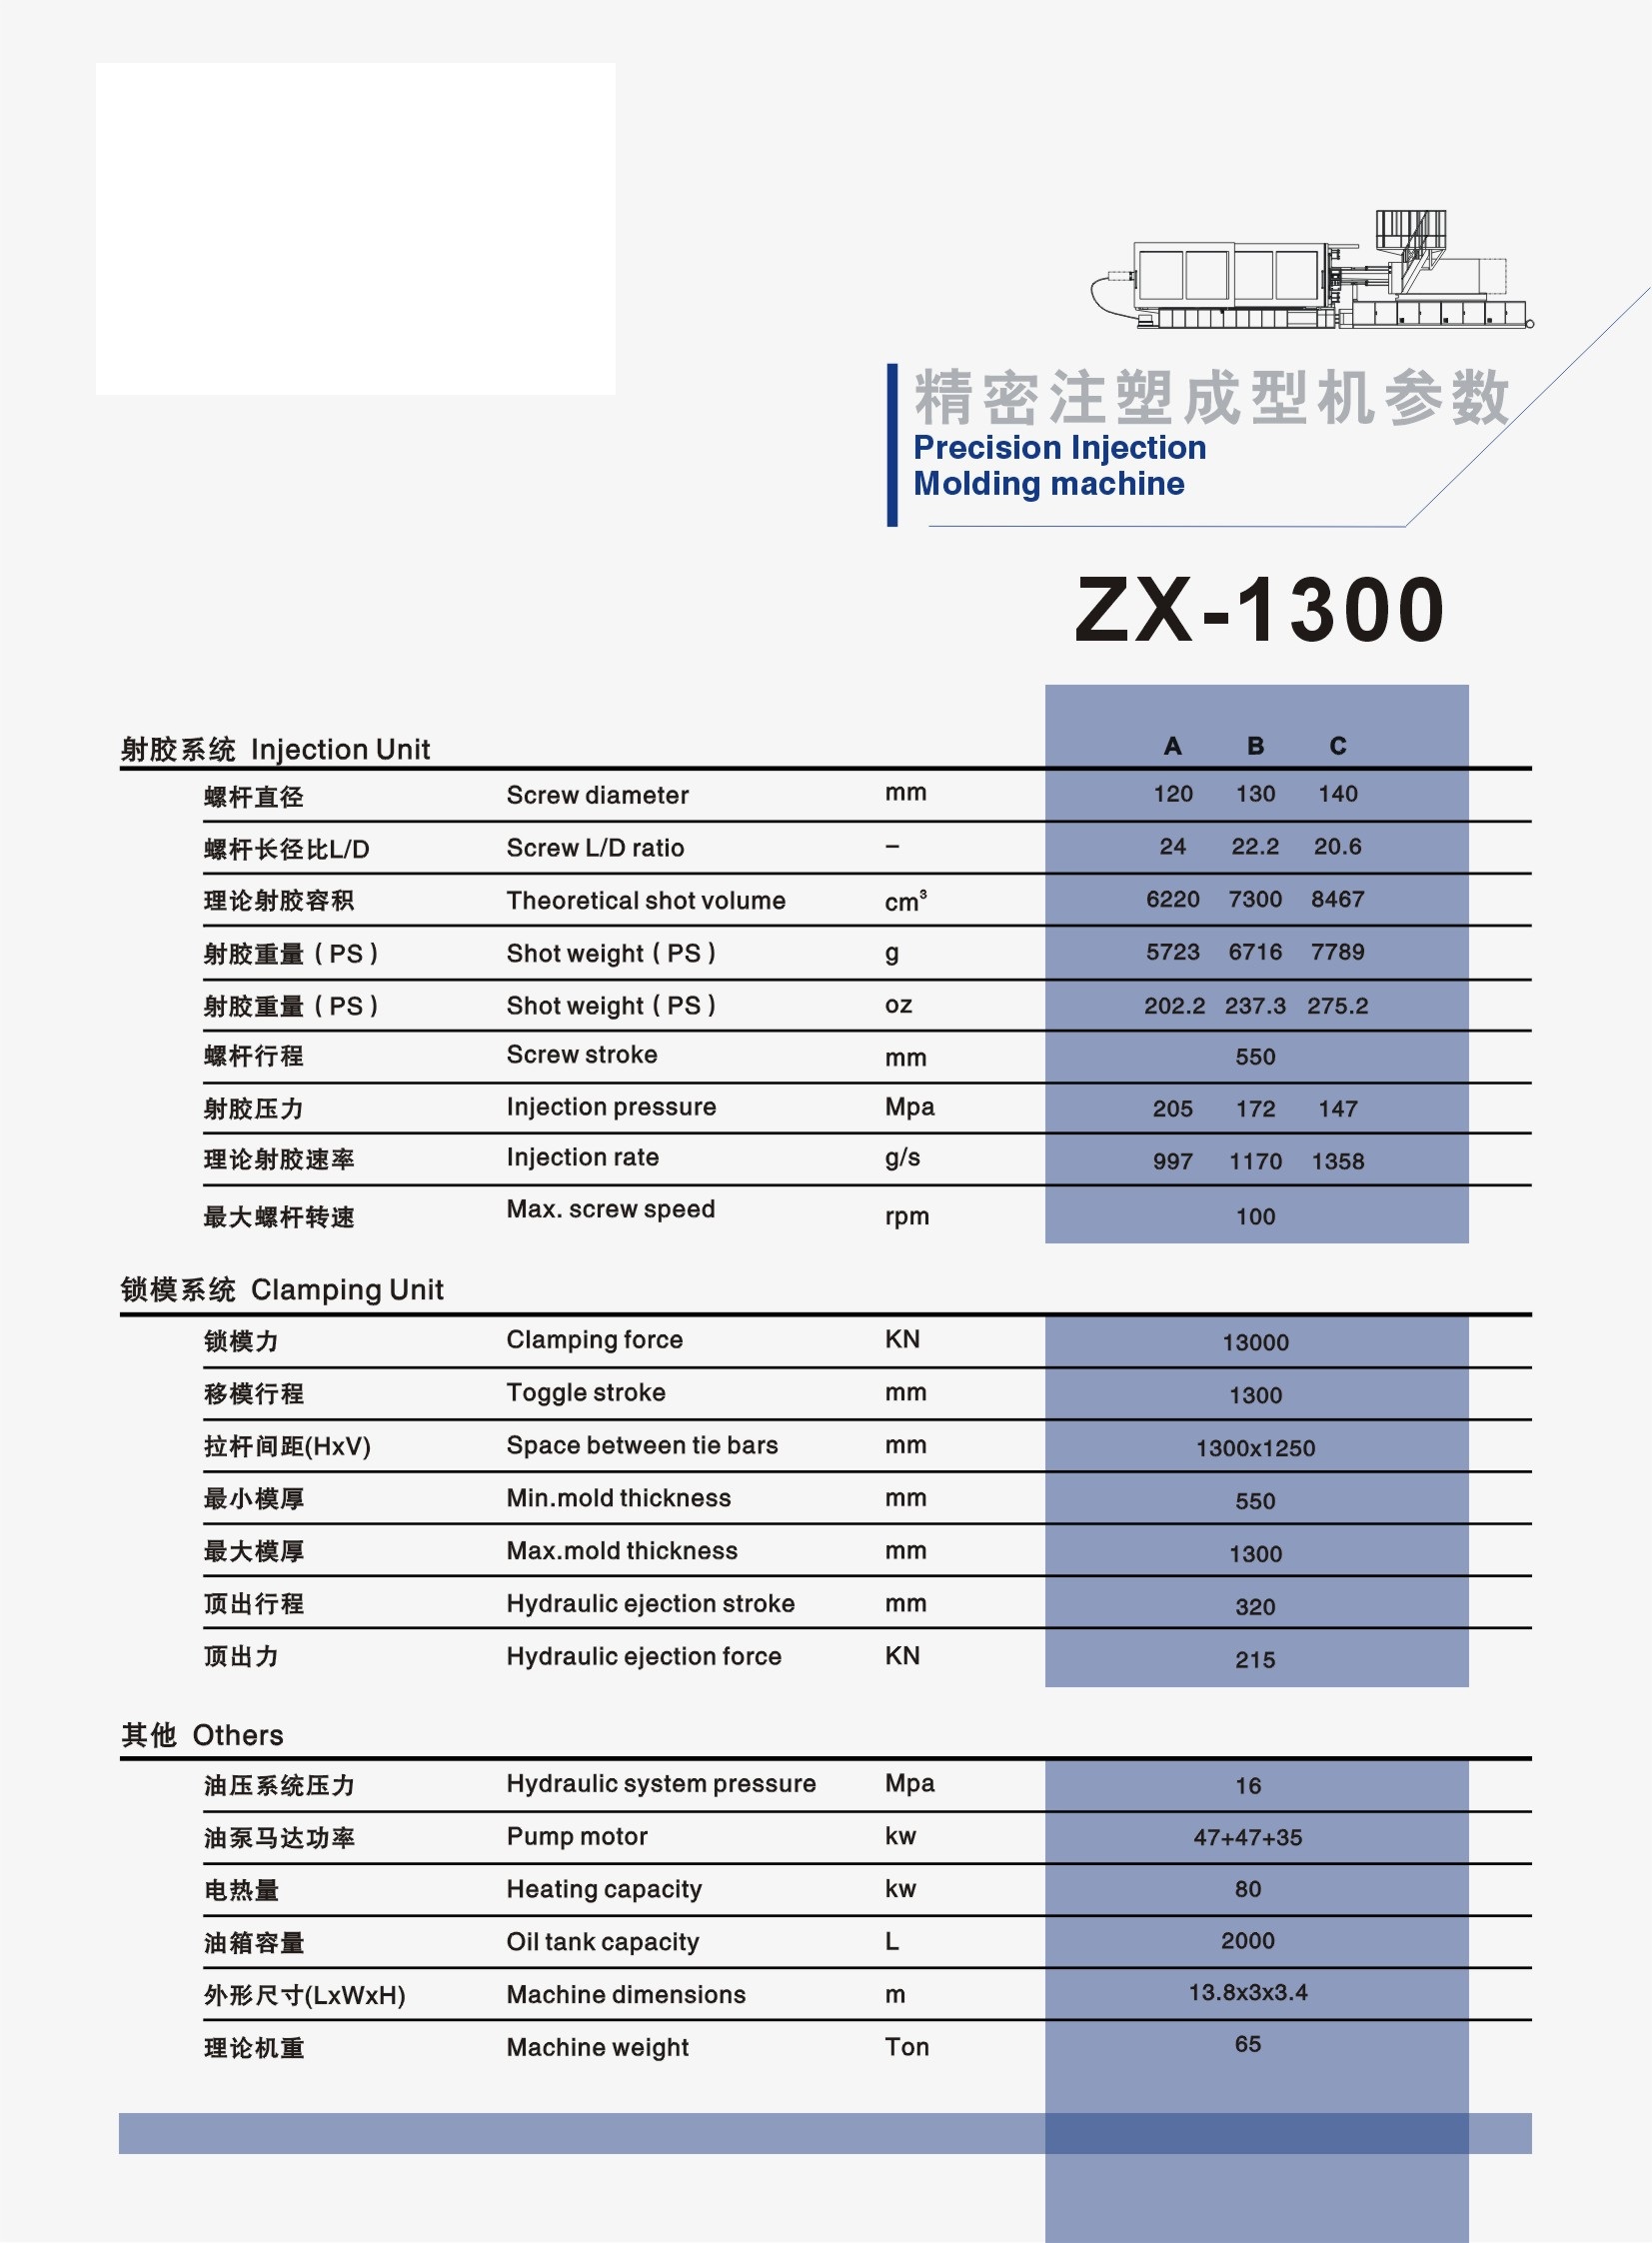 ZX-1300.jpg